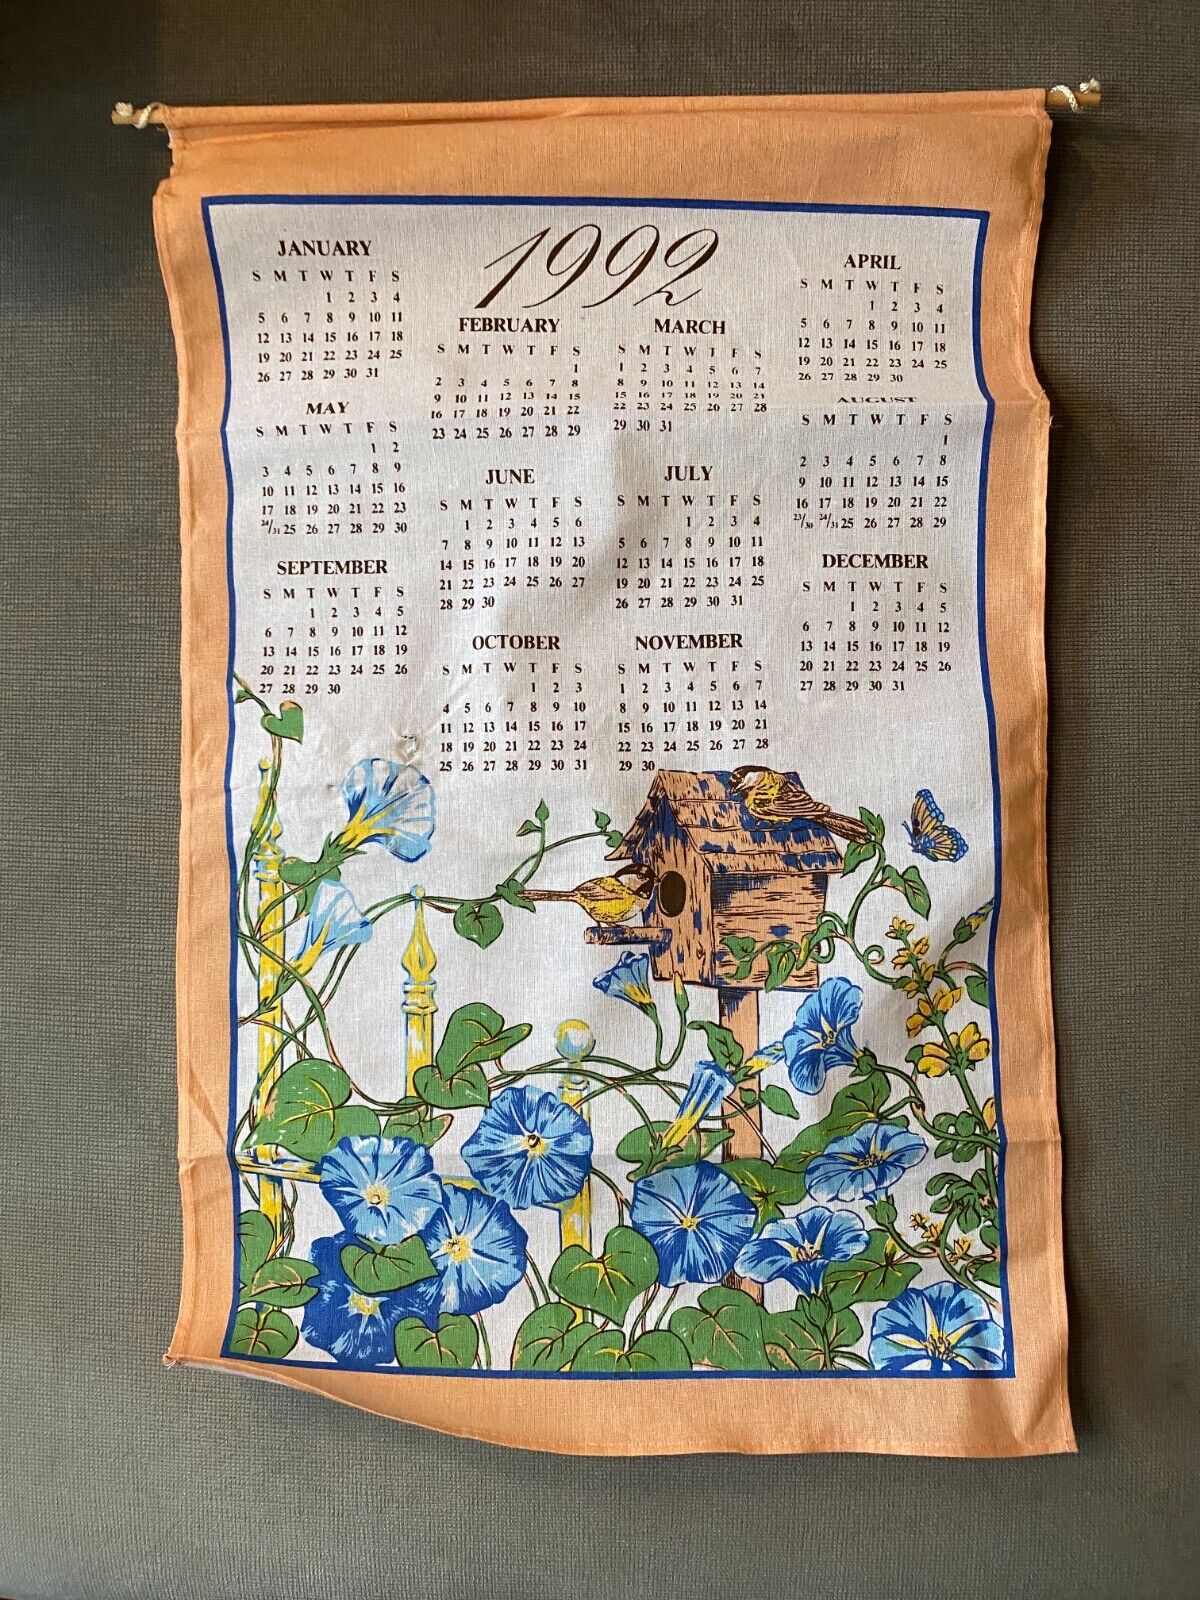 Vintage 1992 Cotton Linen Calendar Floral Birdhouse Design